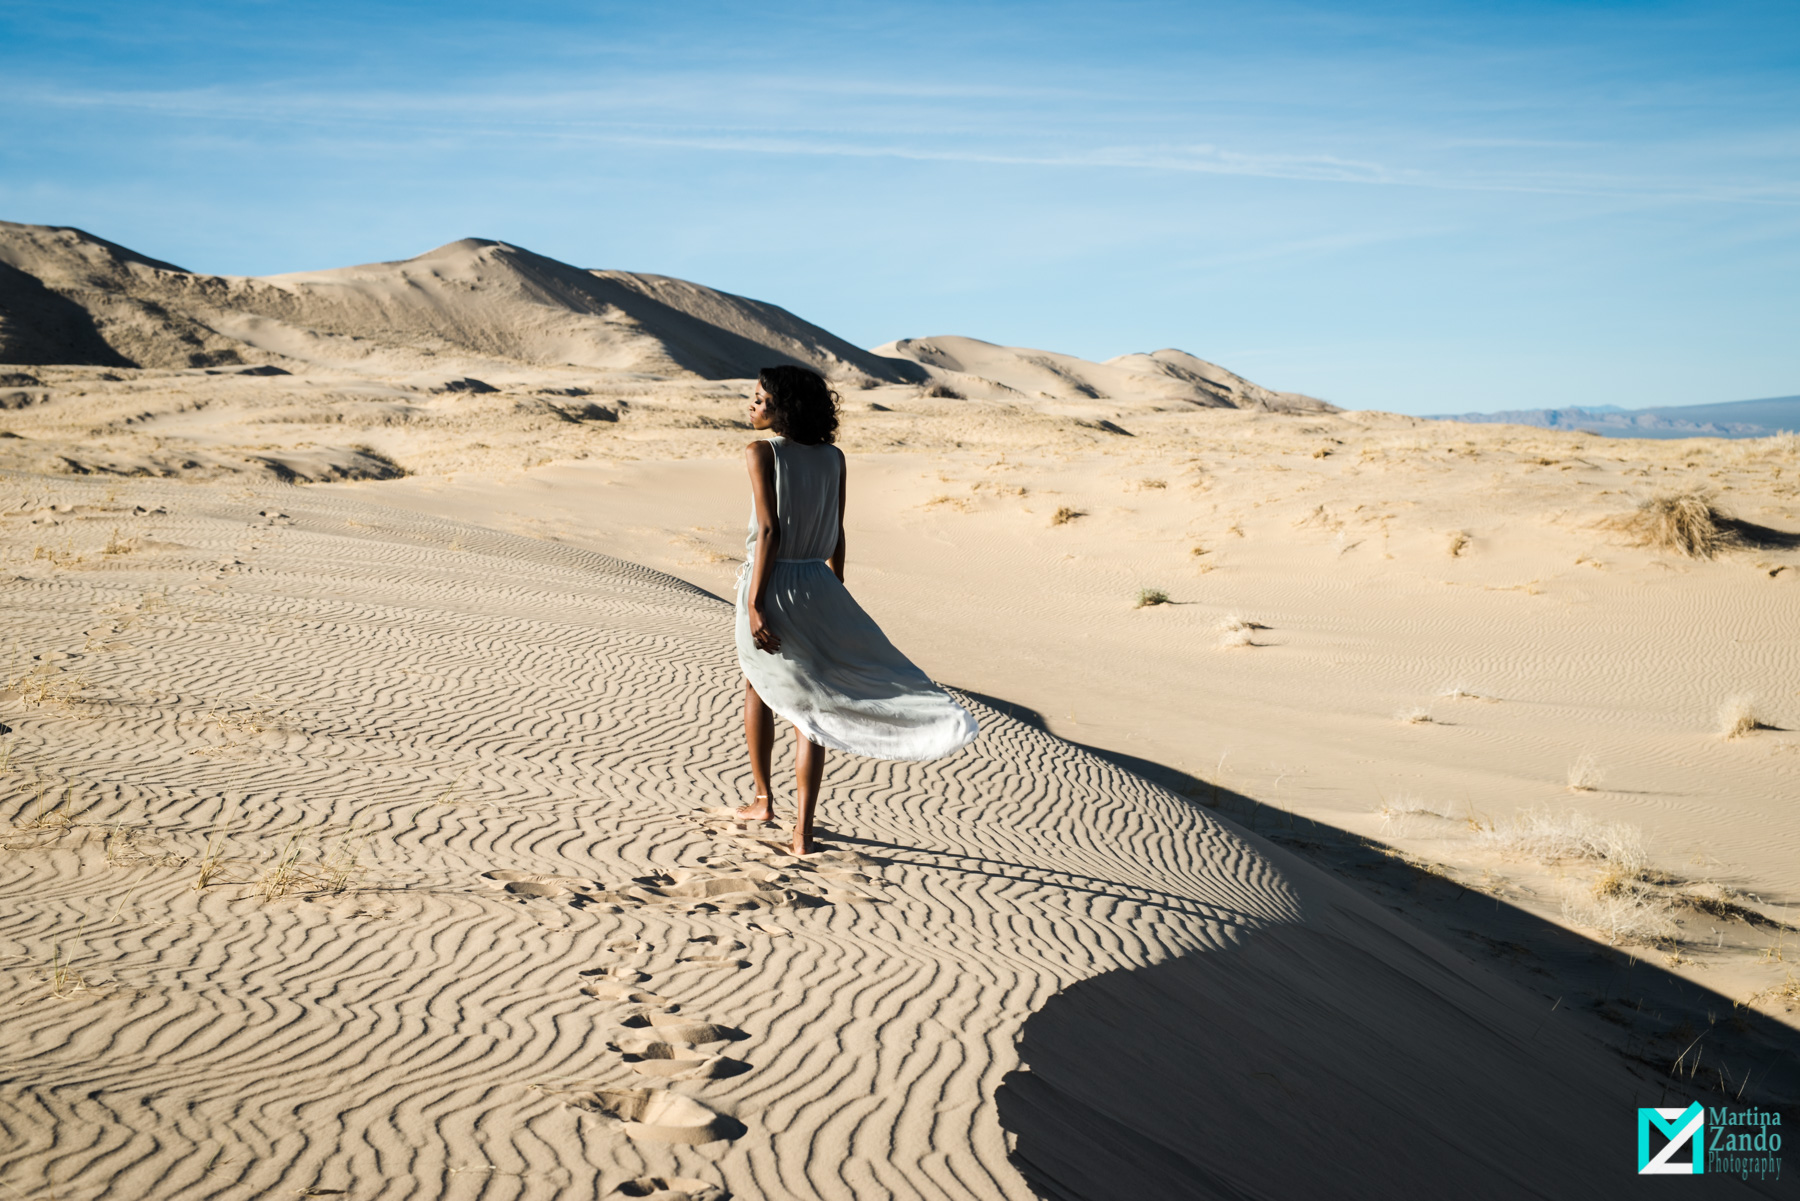 kelso sand dunes photoshoot